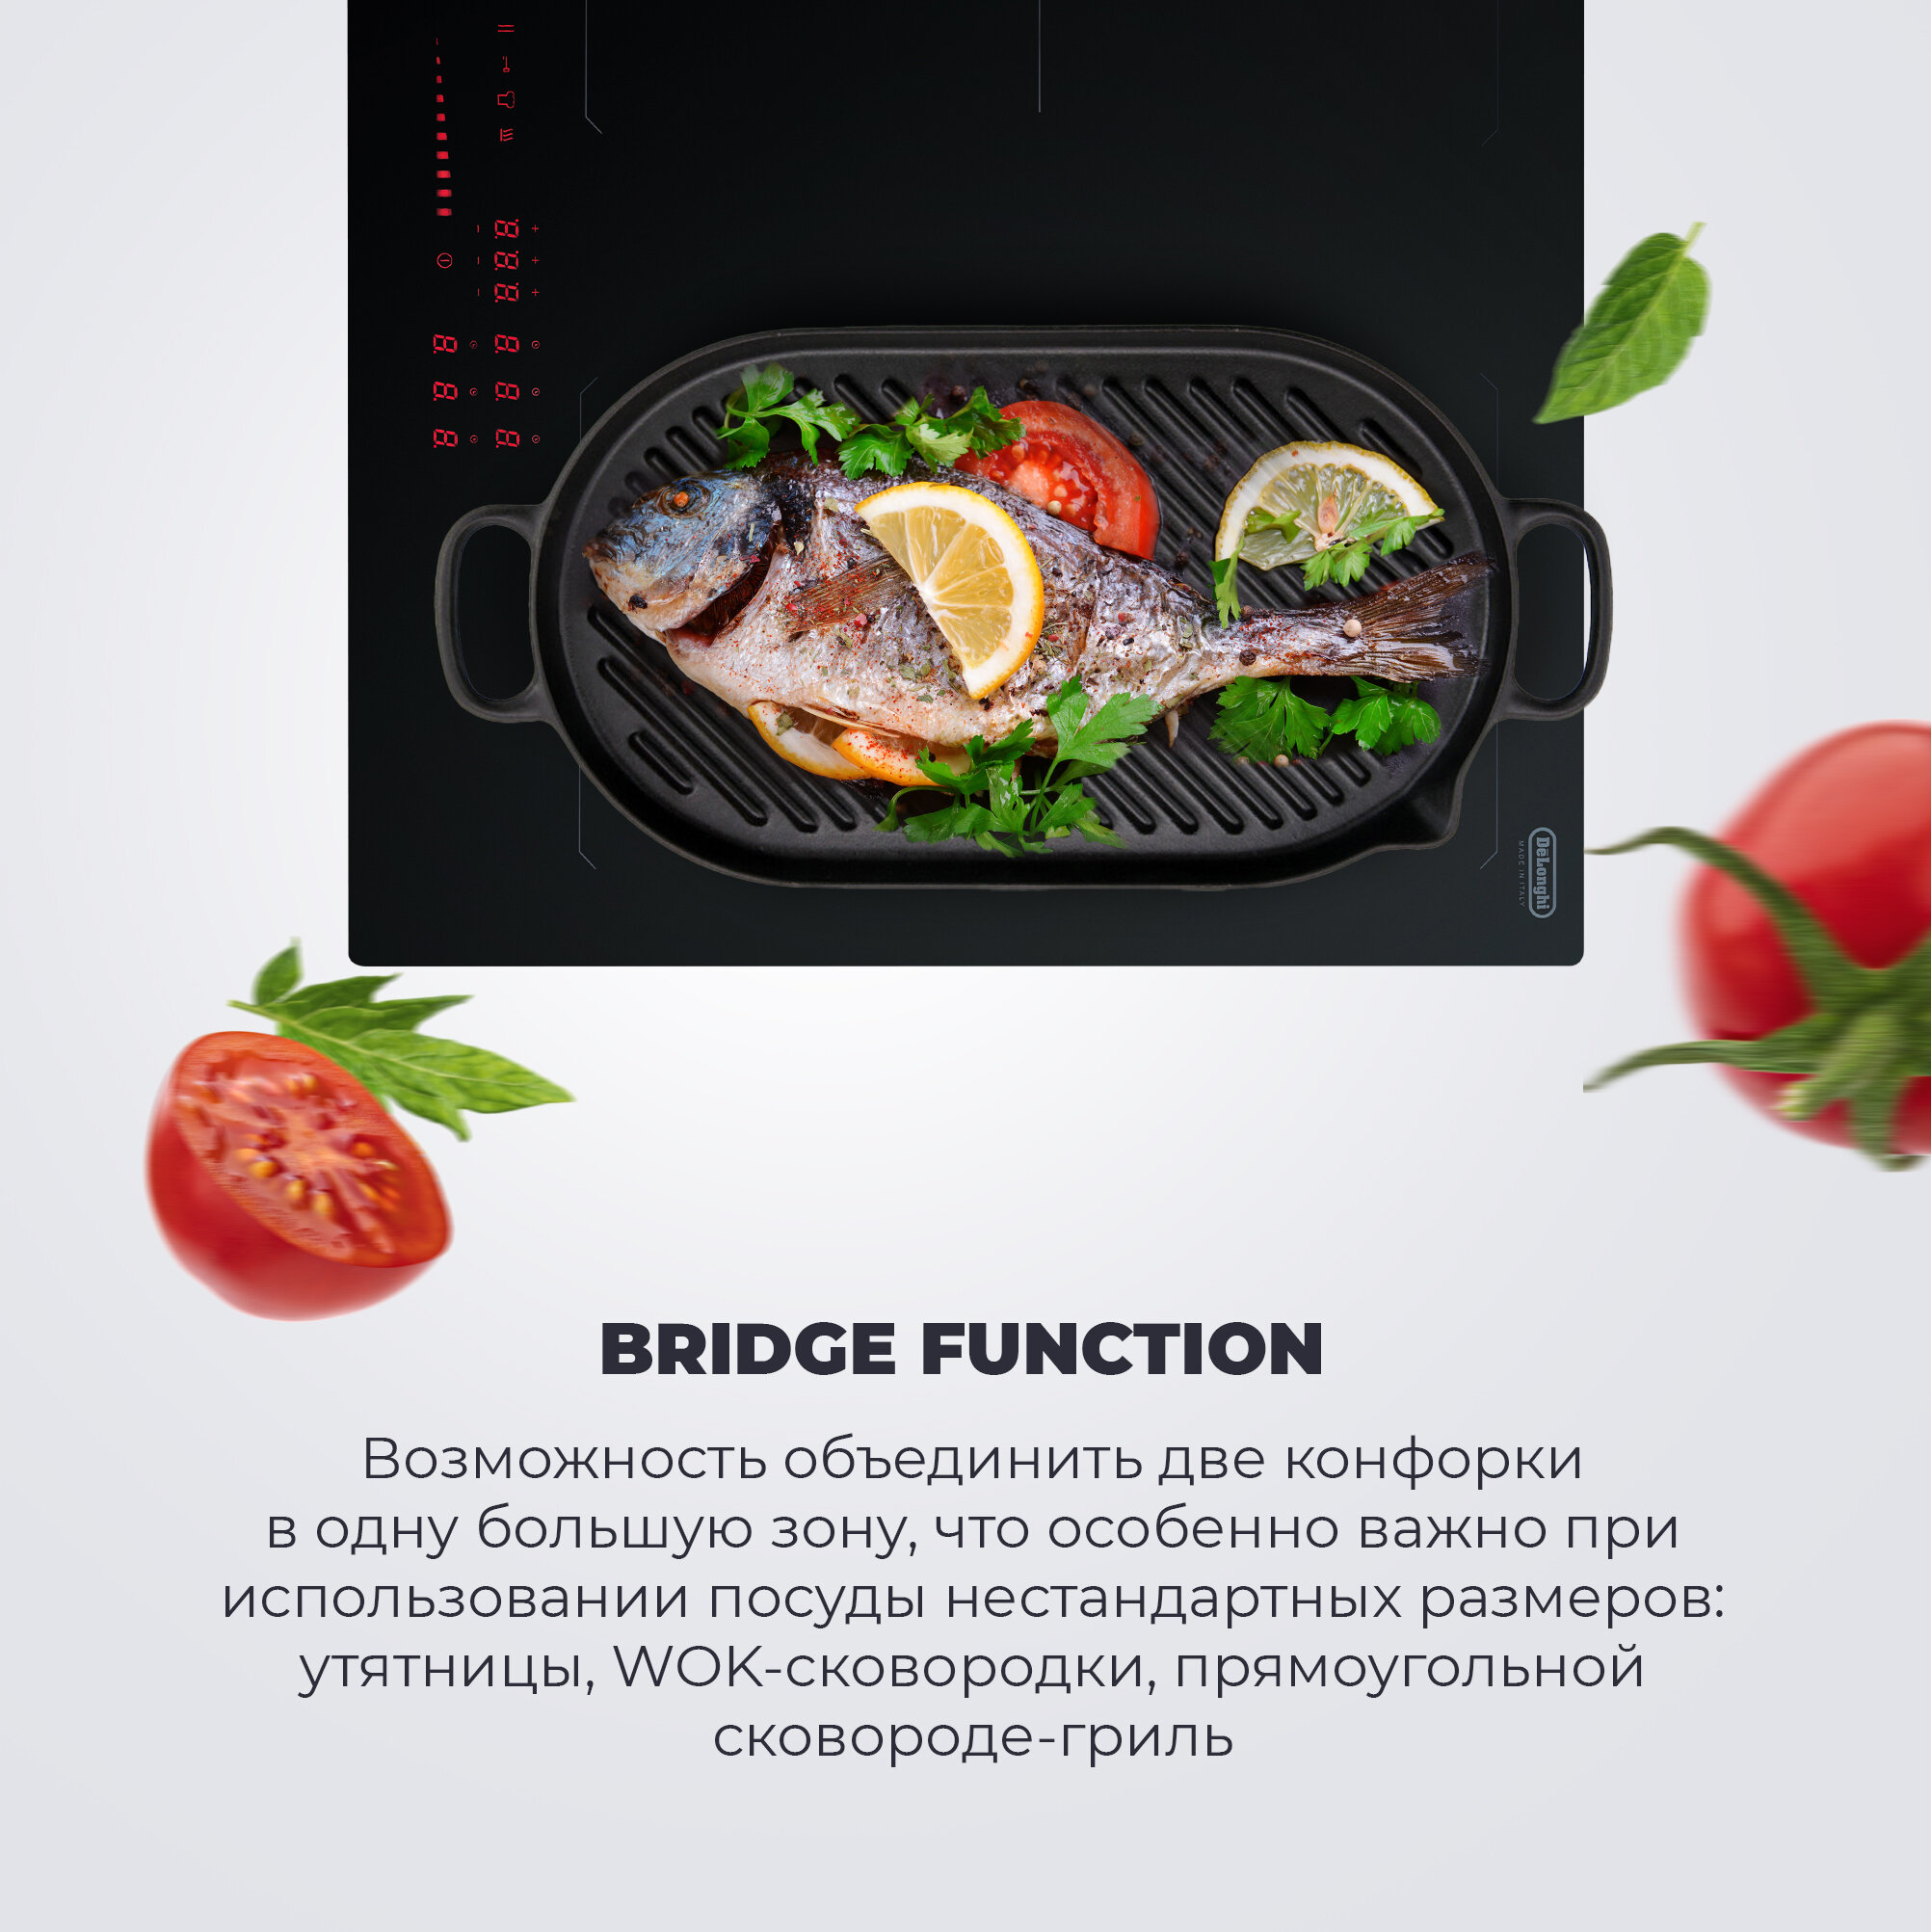 Индукционная варочная панель DeLonghi SLI 604 RUS, 60 см, черная, индикатор остаточного тепла, Bridge function, сенсорное управление - фото №5